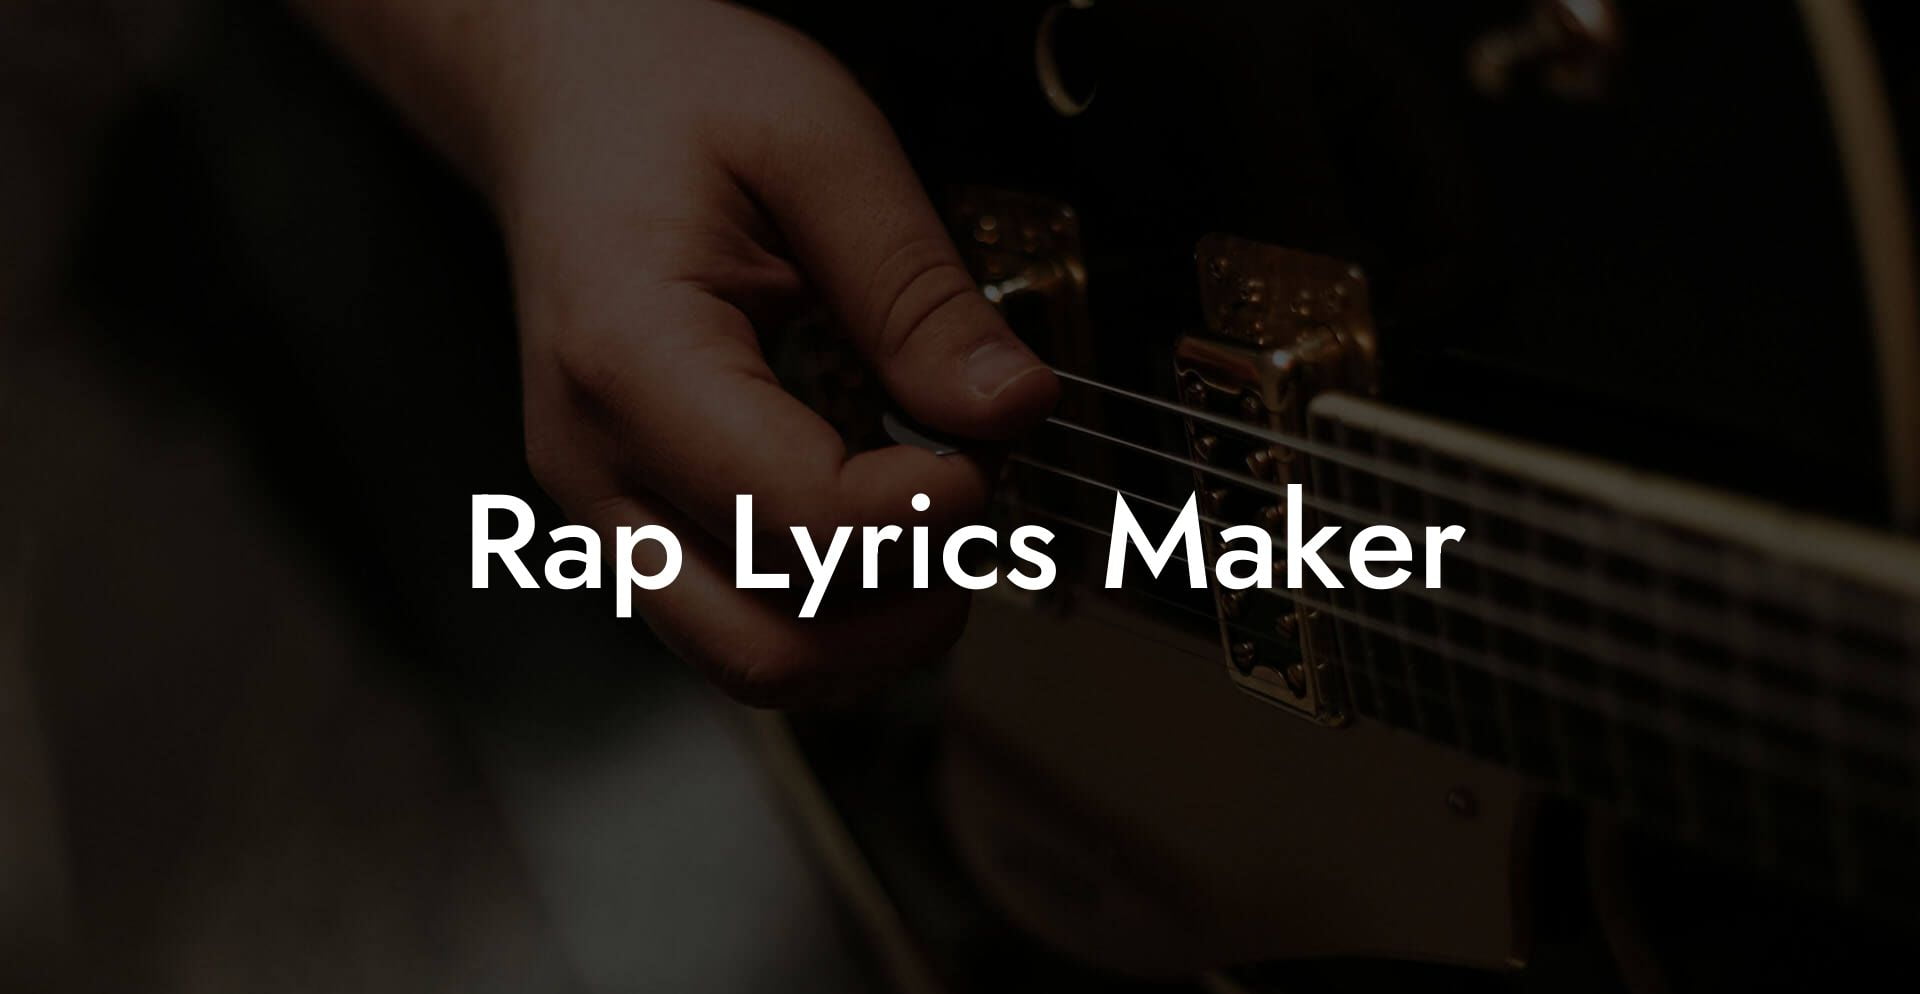 rap lyrics maker lyric assistant